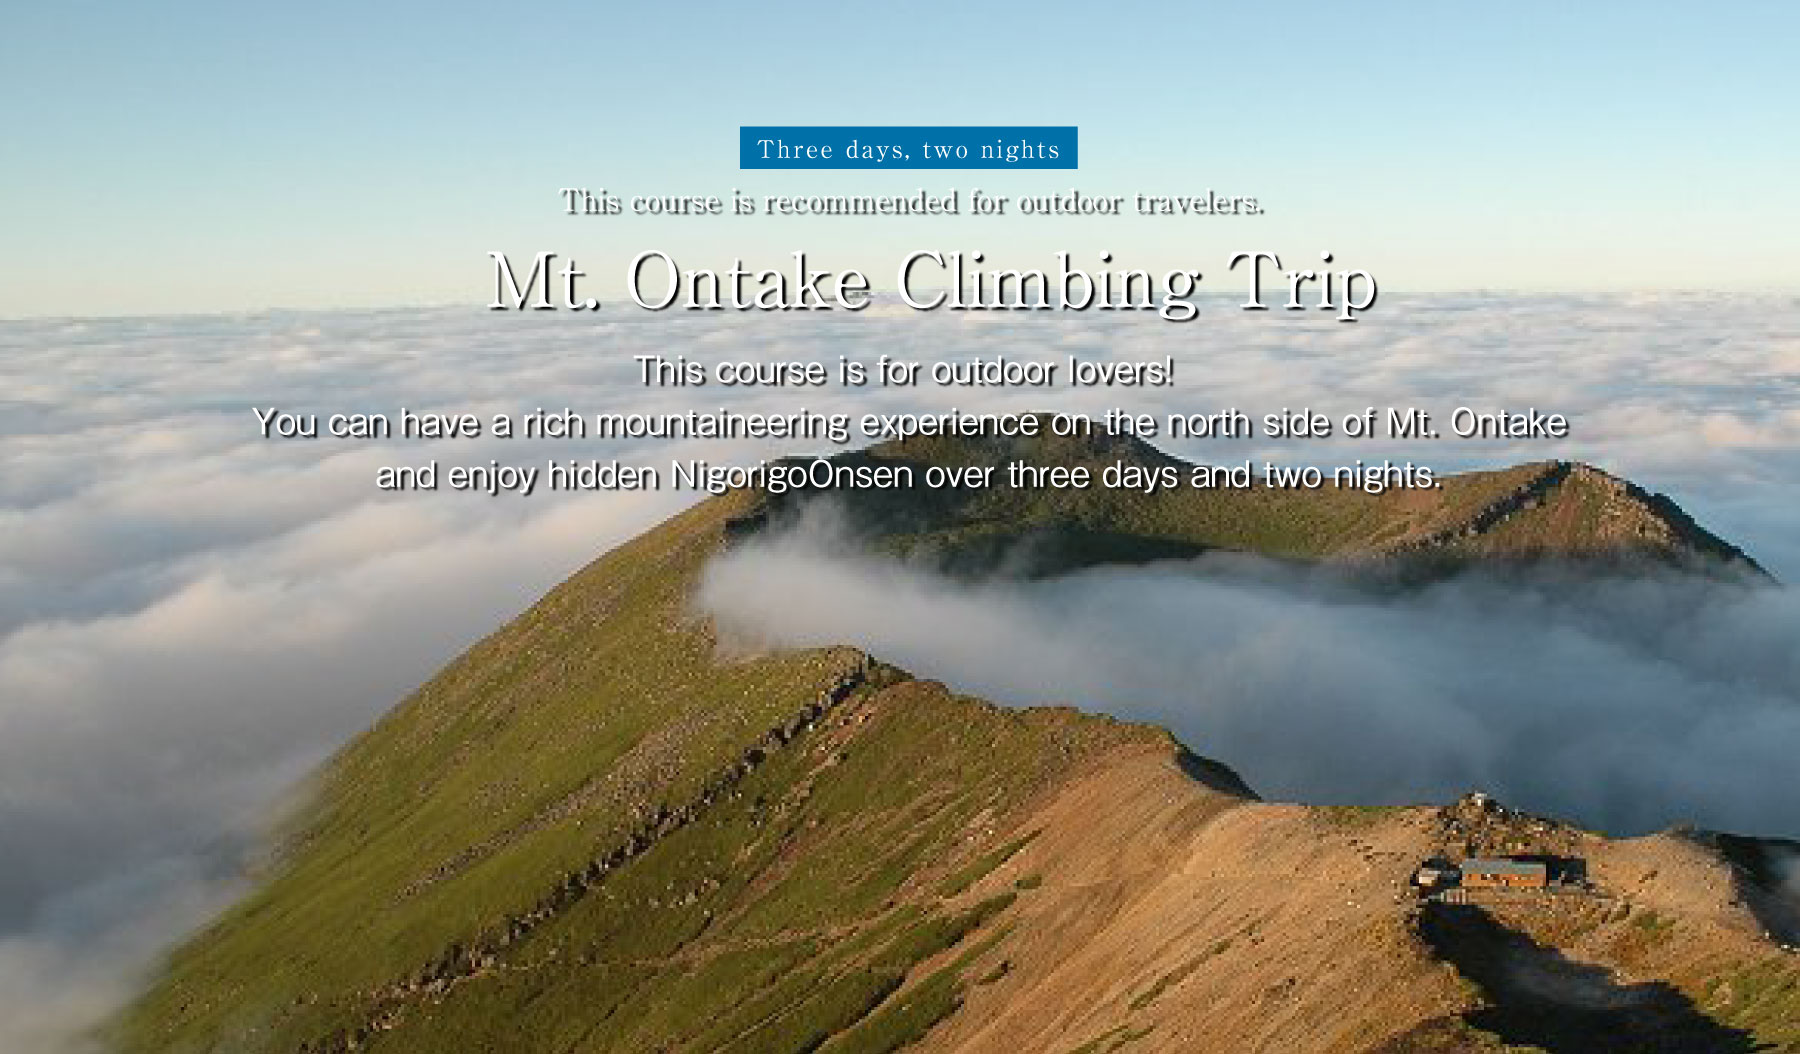 Mt. Ontake climbing trip